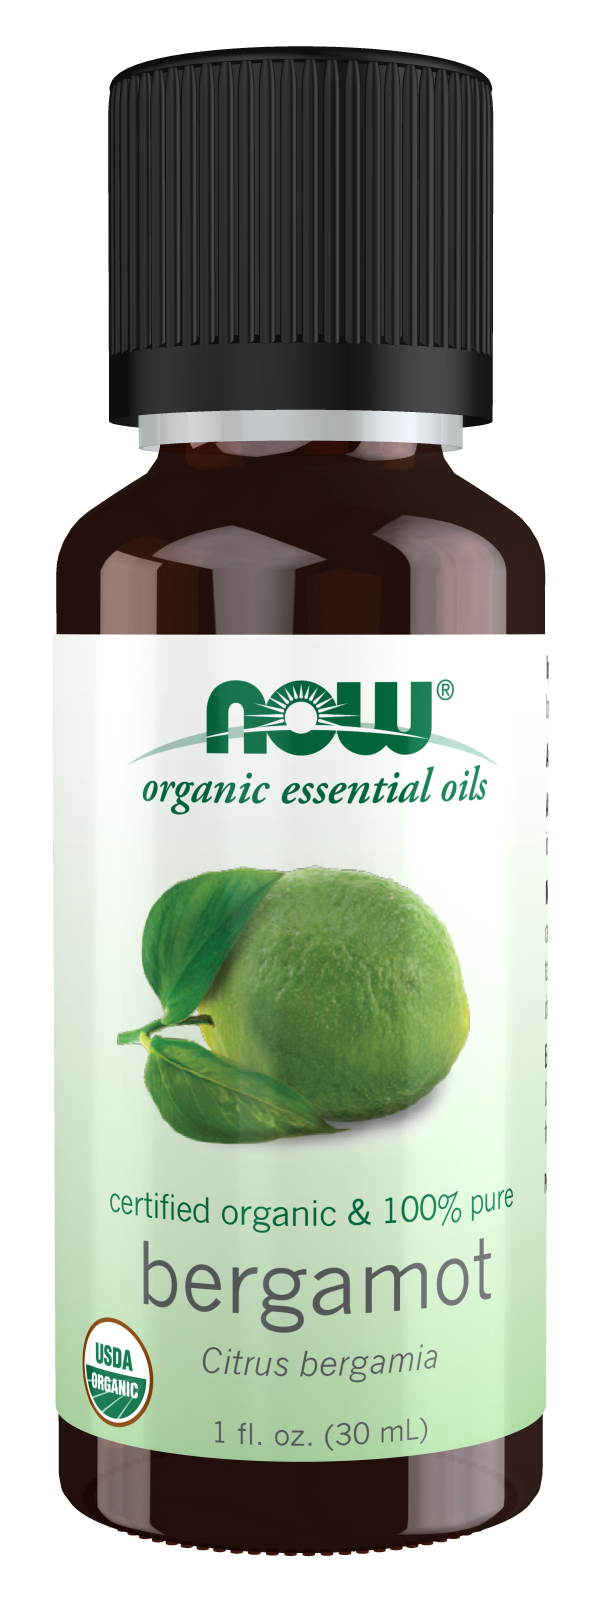 Bergamot Oil, Organic - 1 fl. oz. Bottle Front